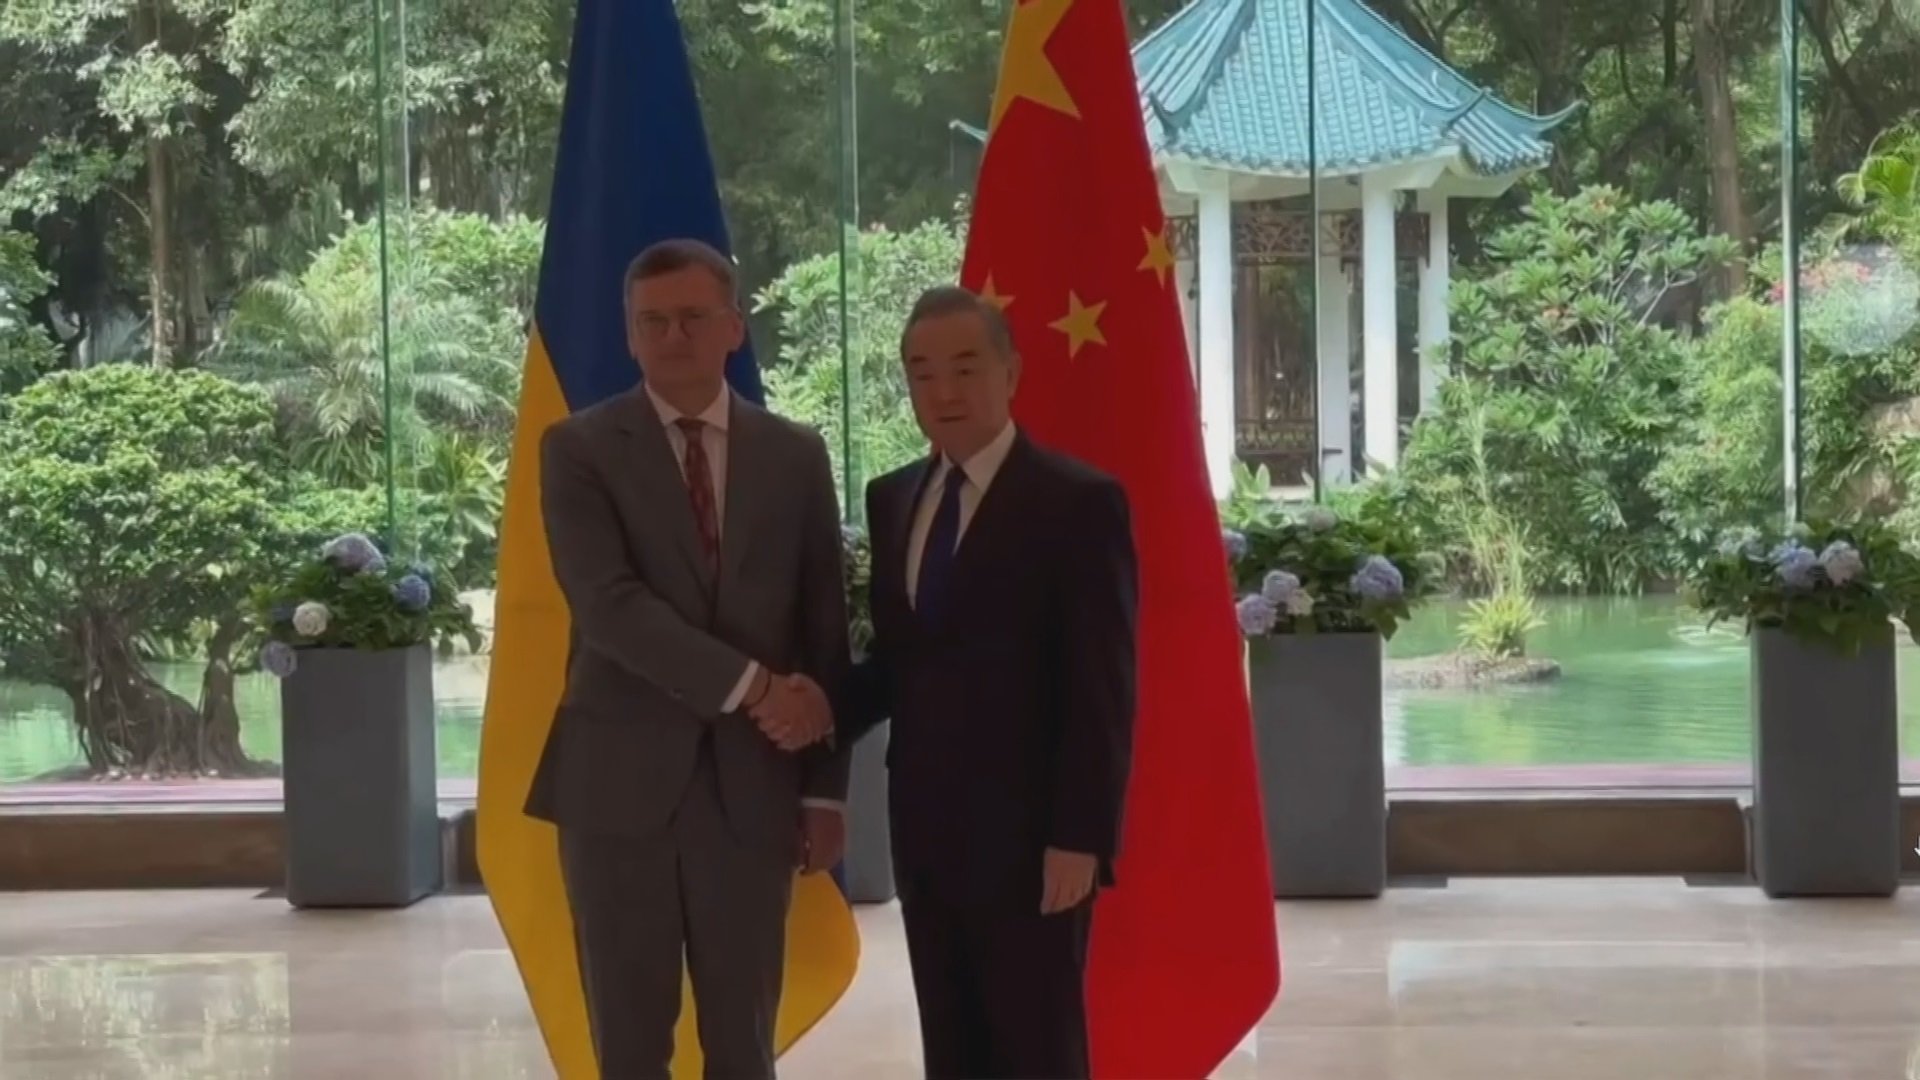 ウクライナ外相 中国外相との会談で「中国側はウクライナの主権と領土保全を尊重する立場を改めて明確に」